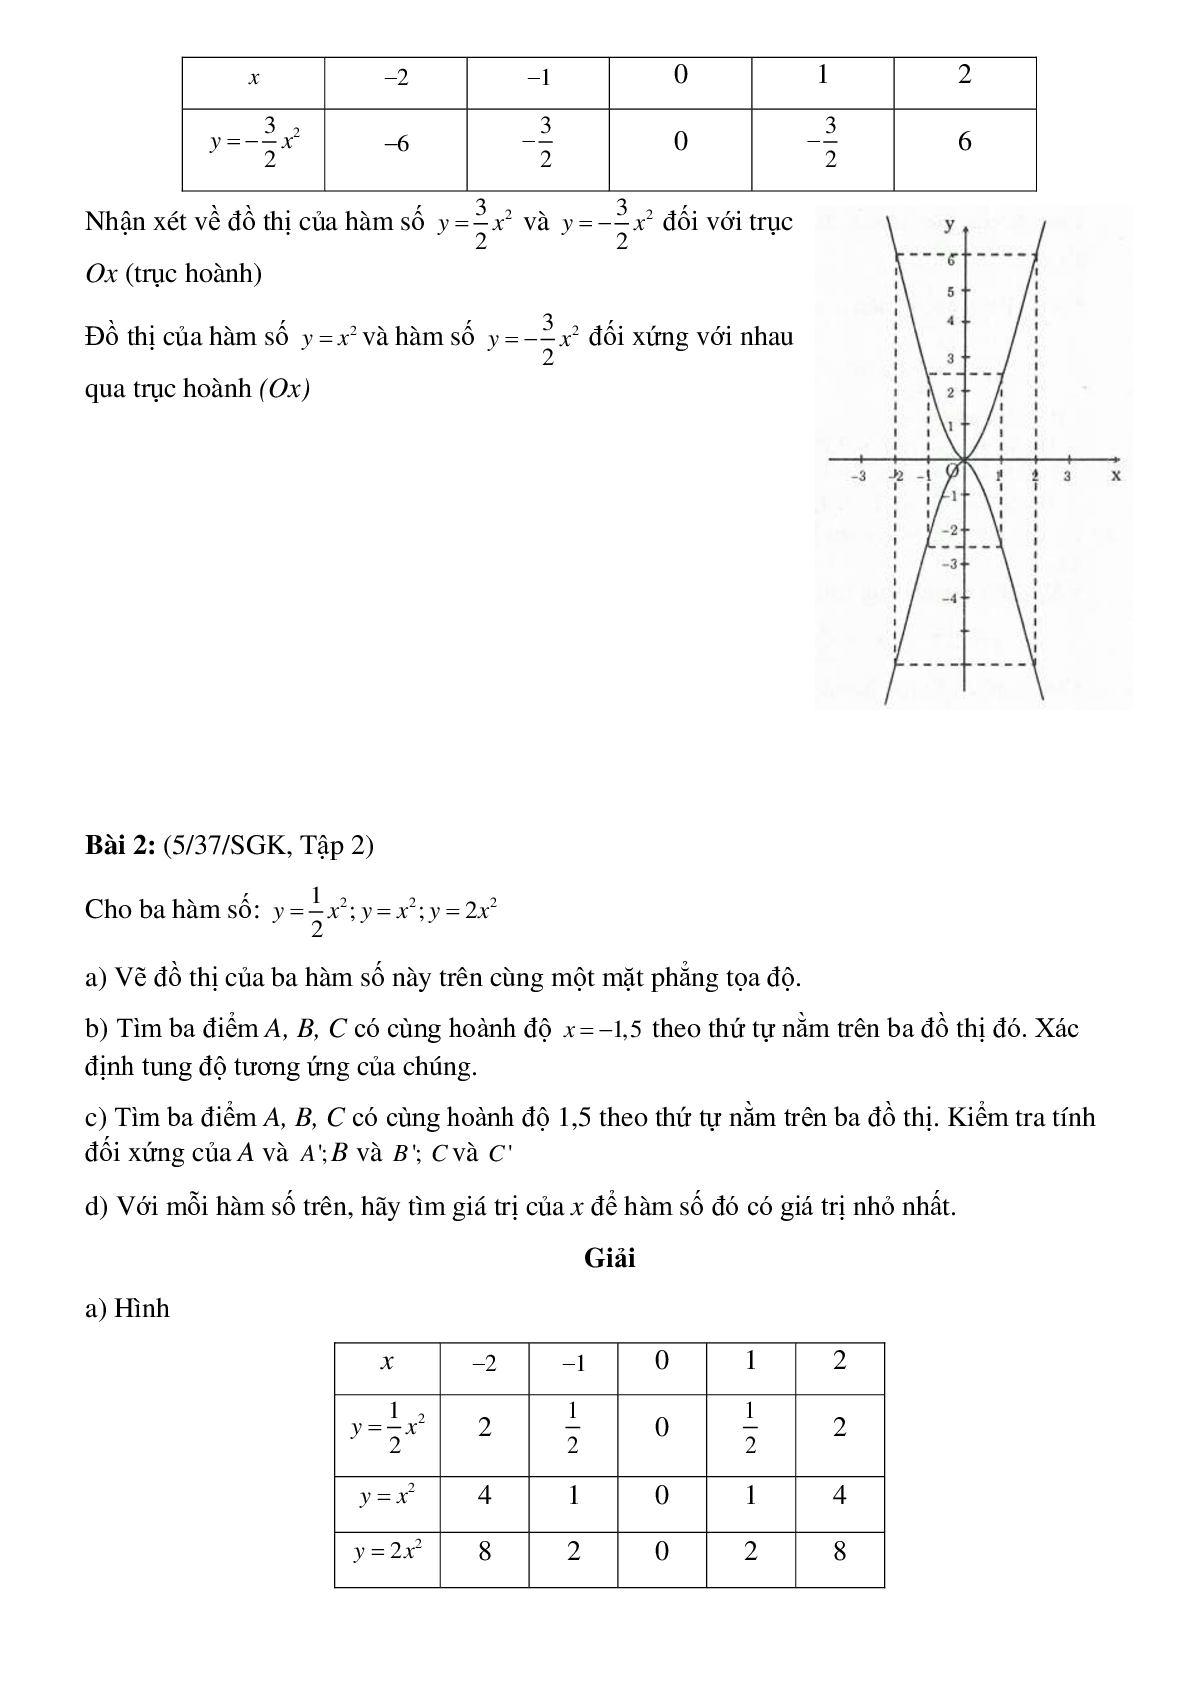 50 Bài tập Đồ thị hàm số y = ax^2 (a ≠ 0) (có đáp án)- Toán 9 (trang 2)